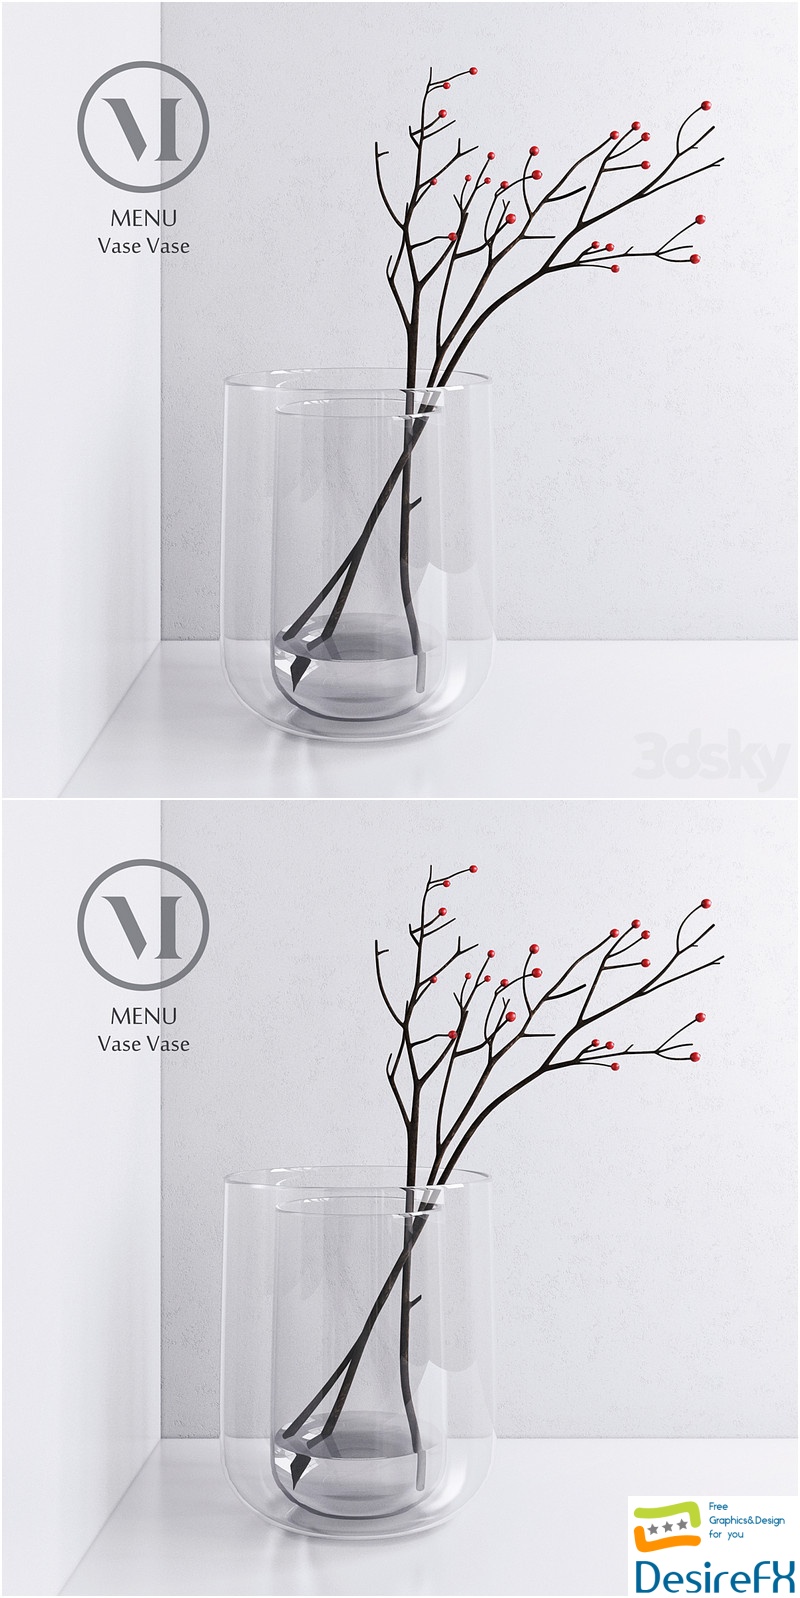 Menu Vase Vase by Norm 3D Model